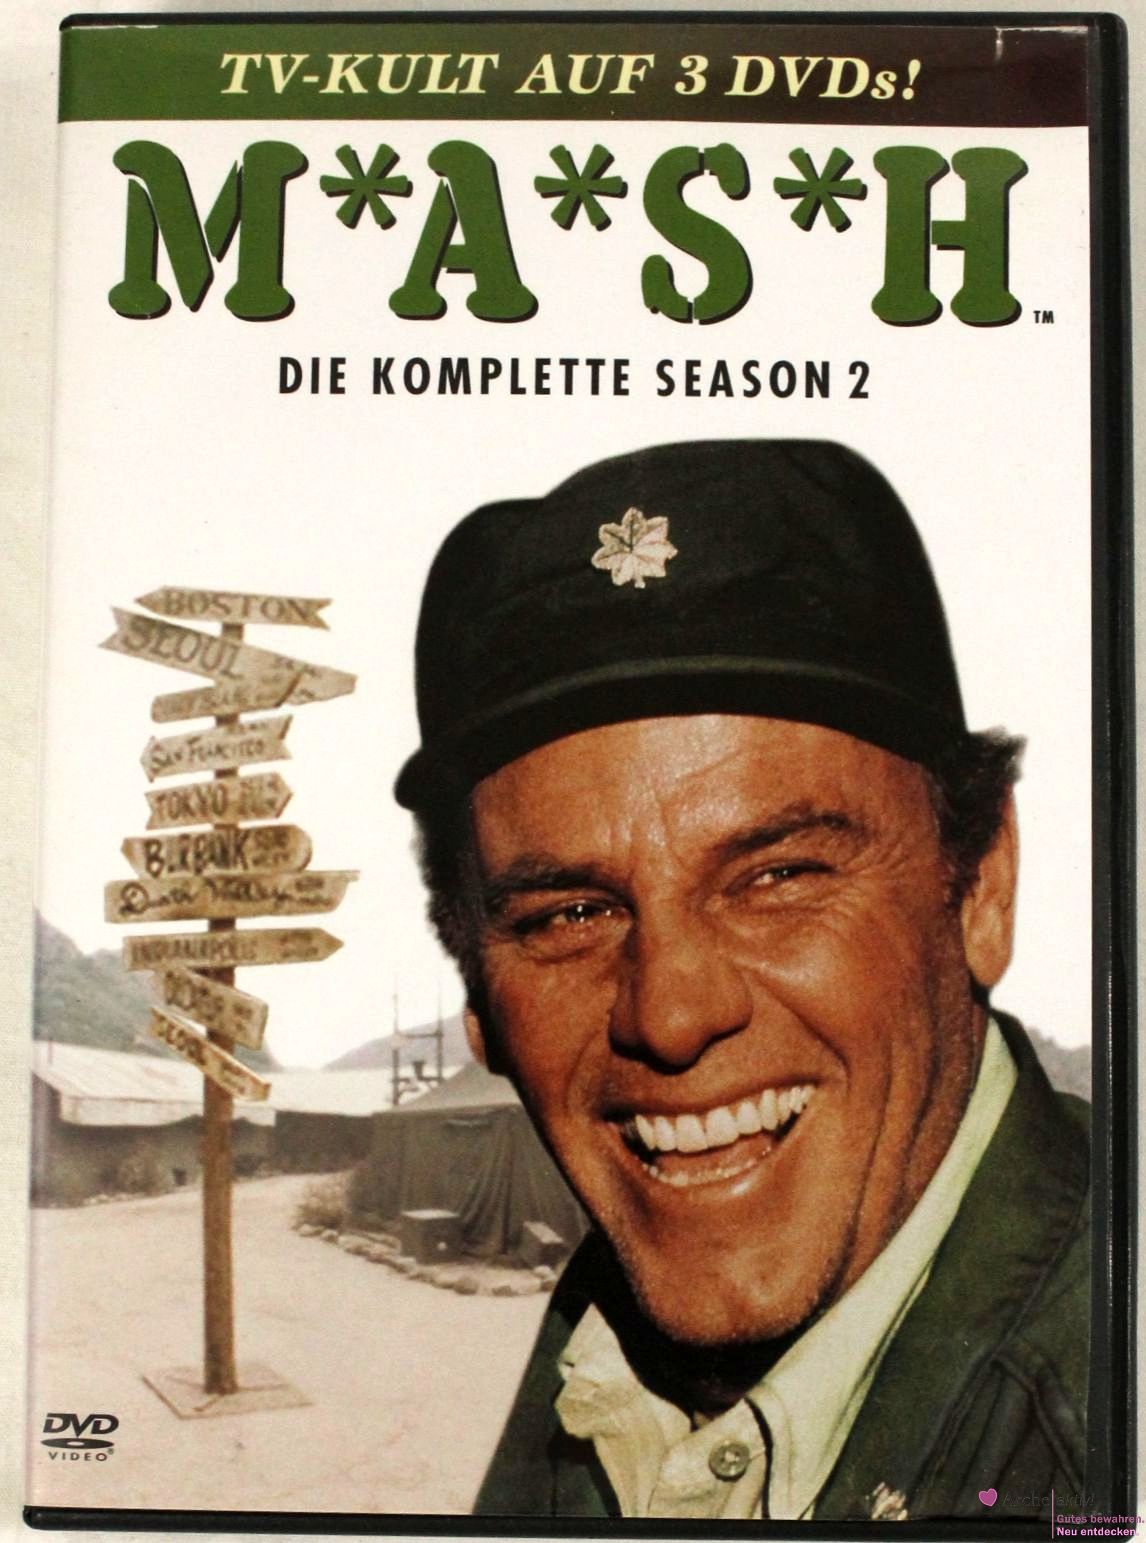 M*A*S*H - Die komplette Season 2, auf 3 DVDs!, gebr.